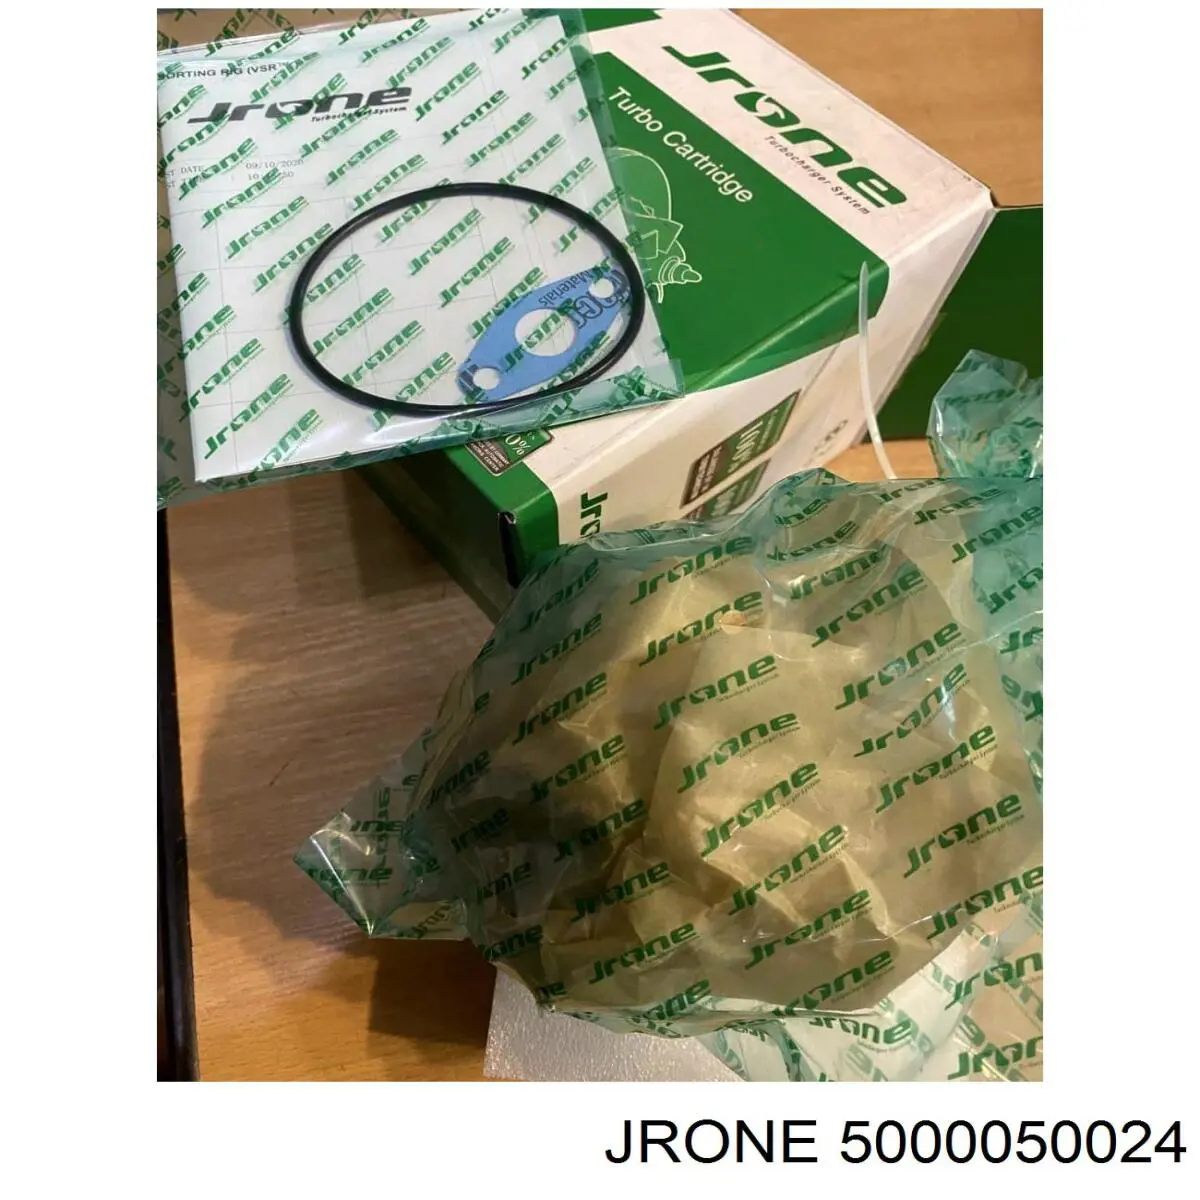  JRONE 5000050024